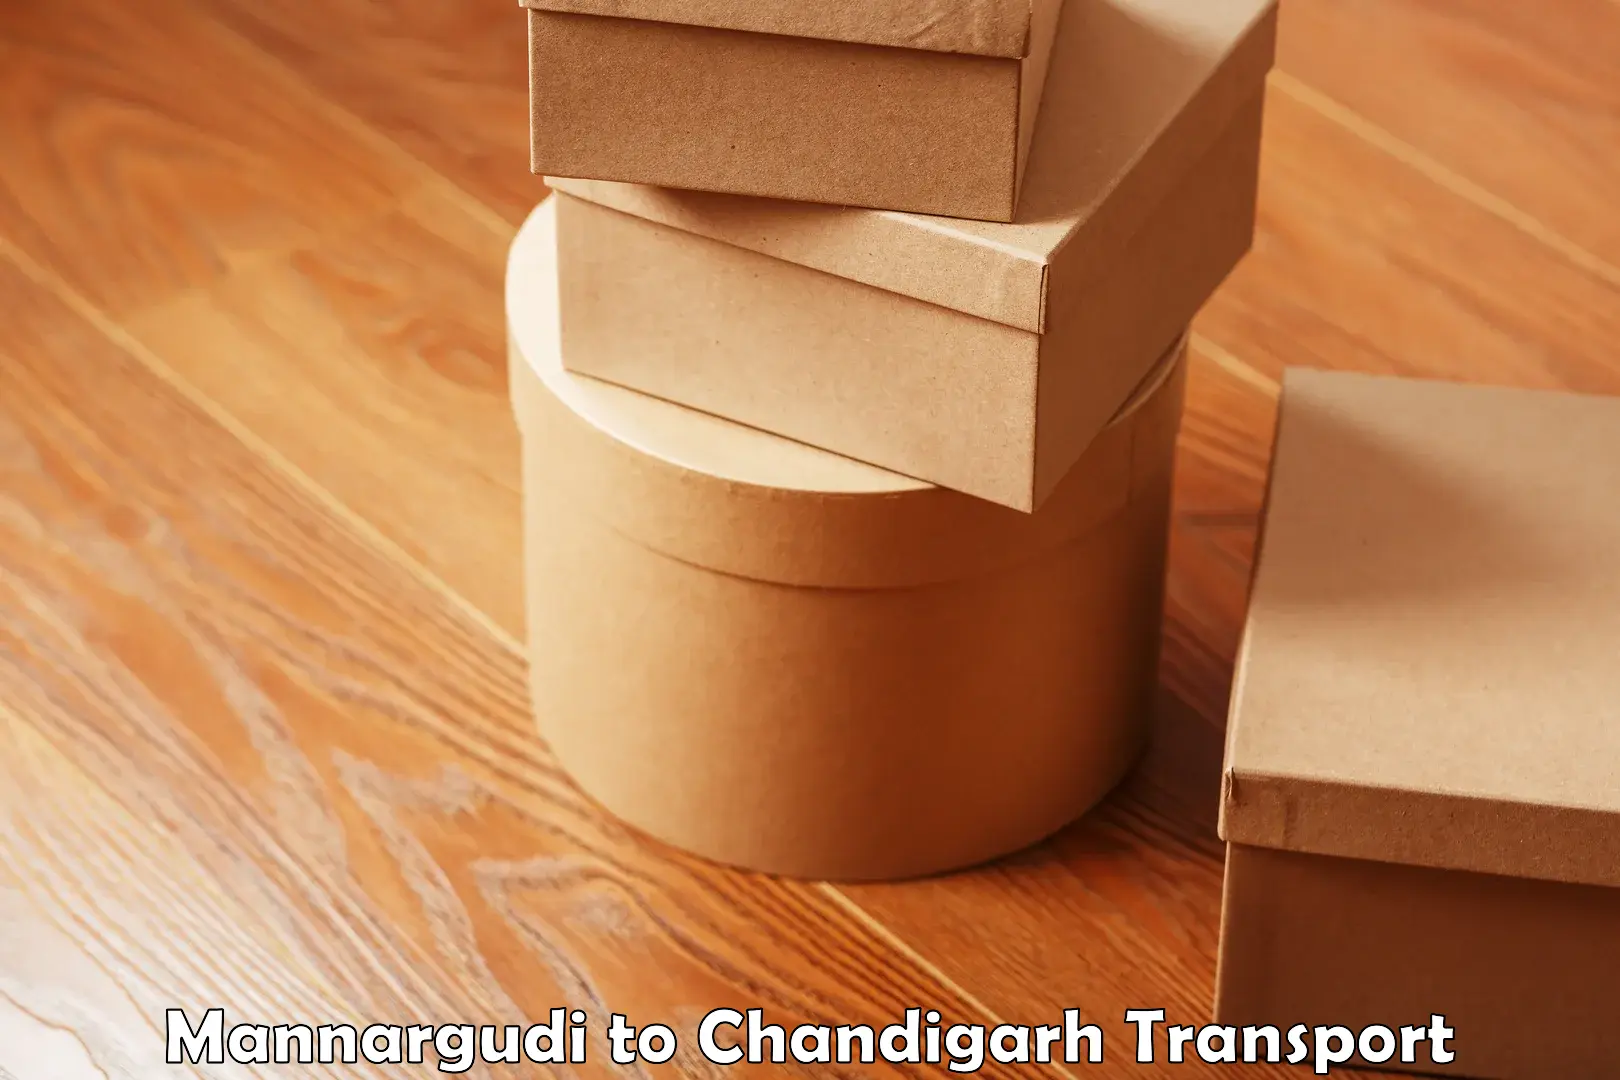 Cargo transport services Mannargudi to Chandigarh